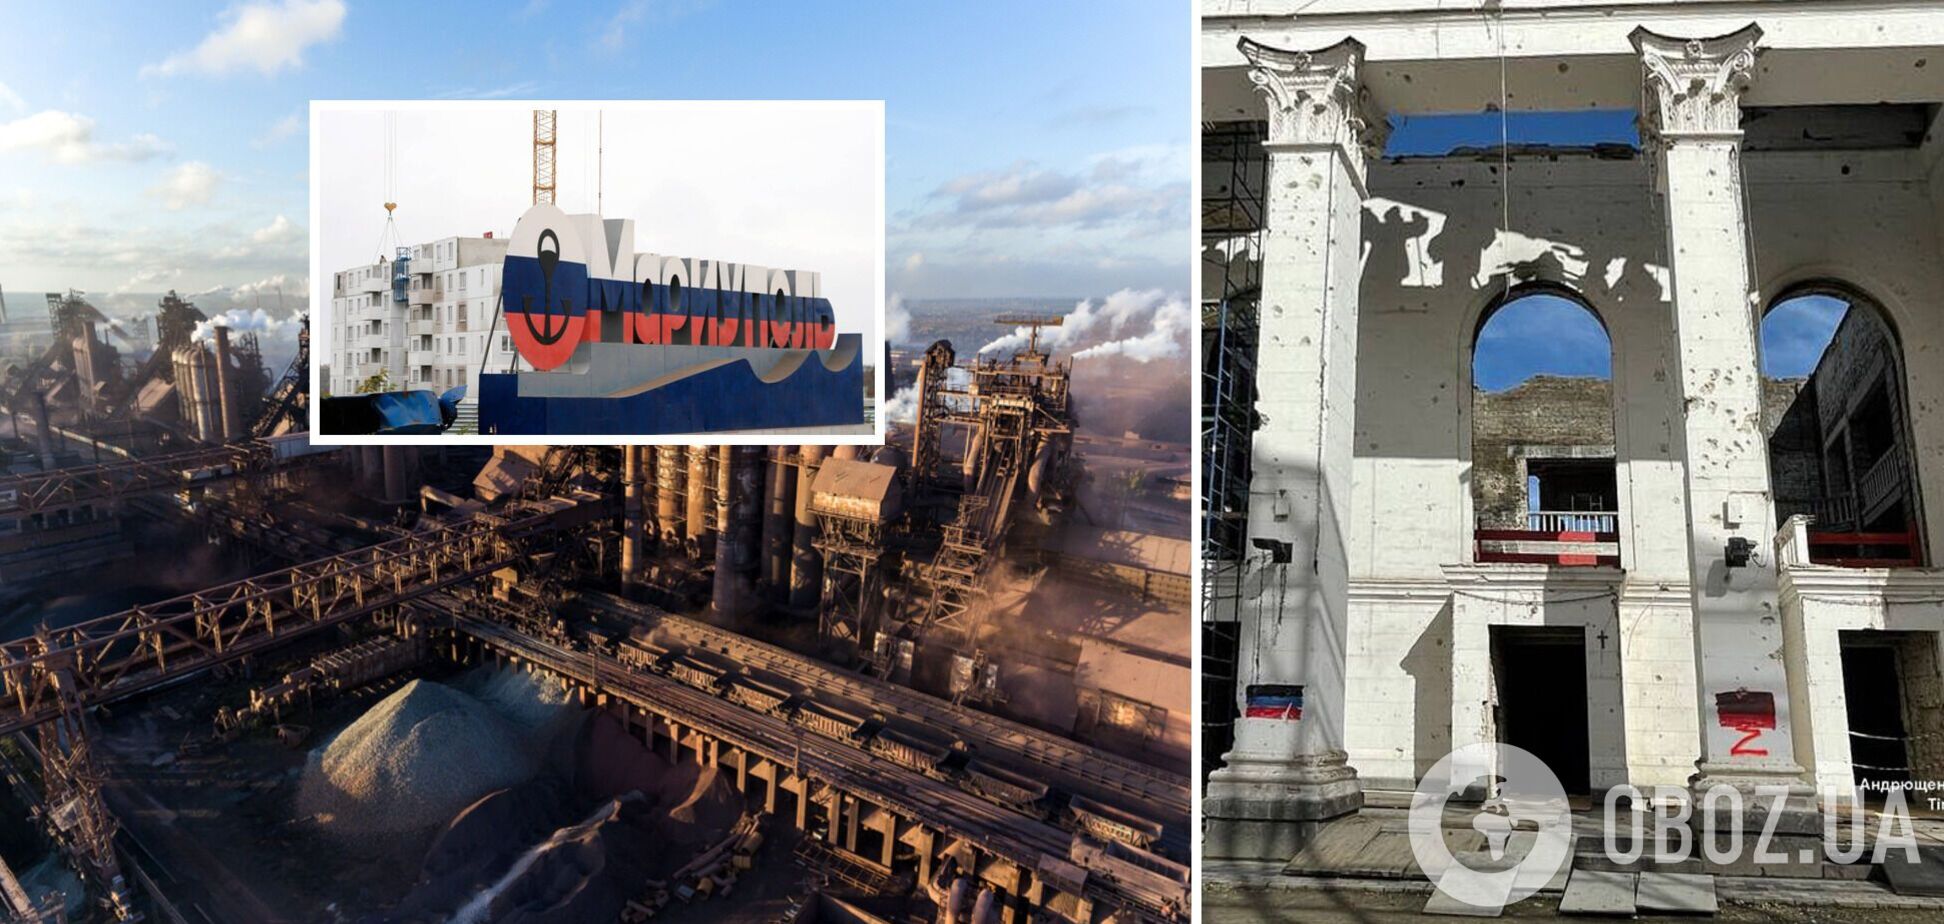 Даже в руинах сохраняют свое величие: в сети показали, как выглядят 'Азовсталь' и Драмтеатр в Мариуполе. Фото и видео